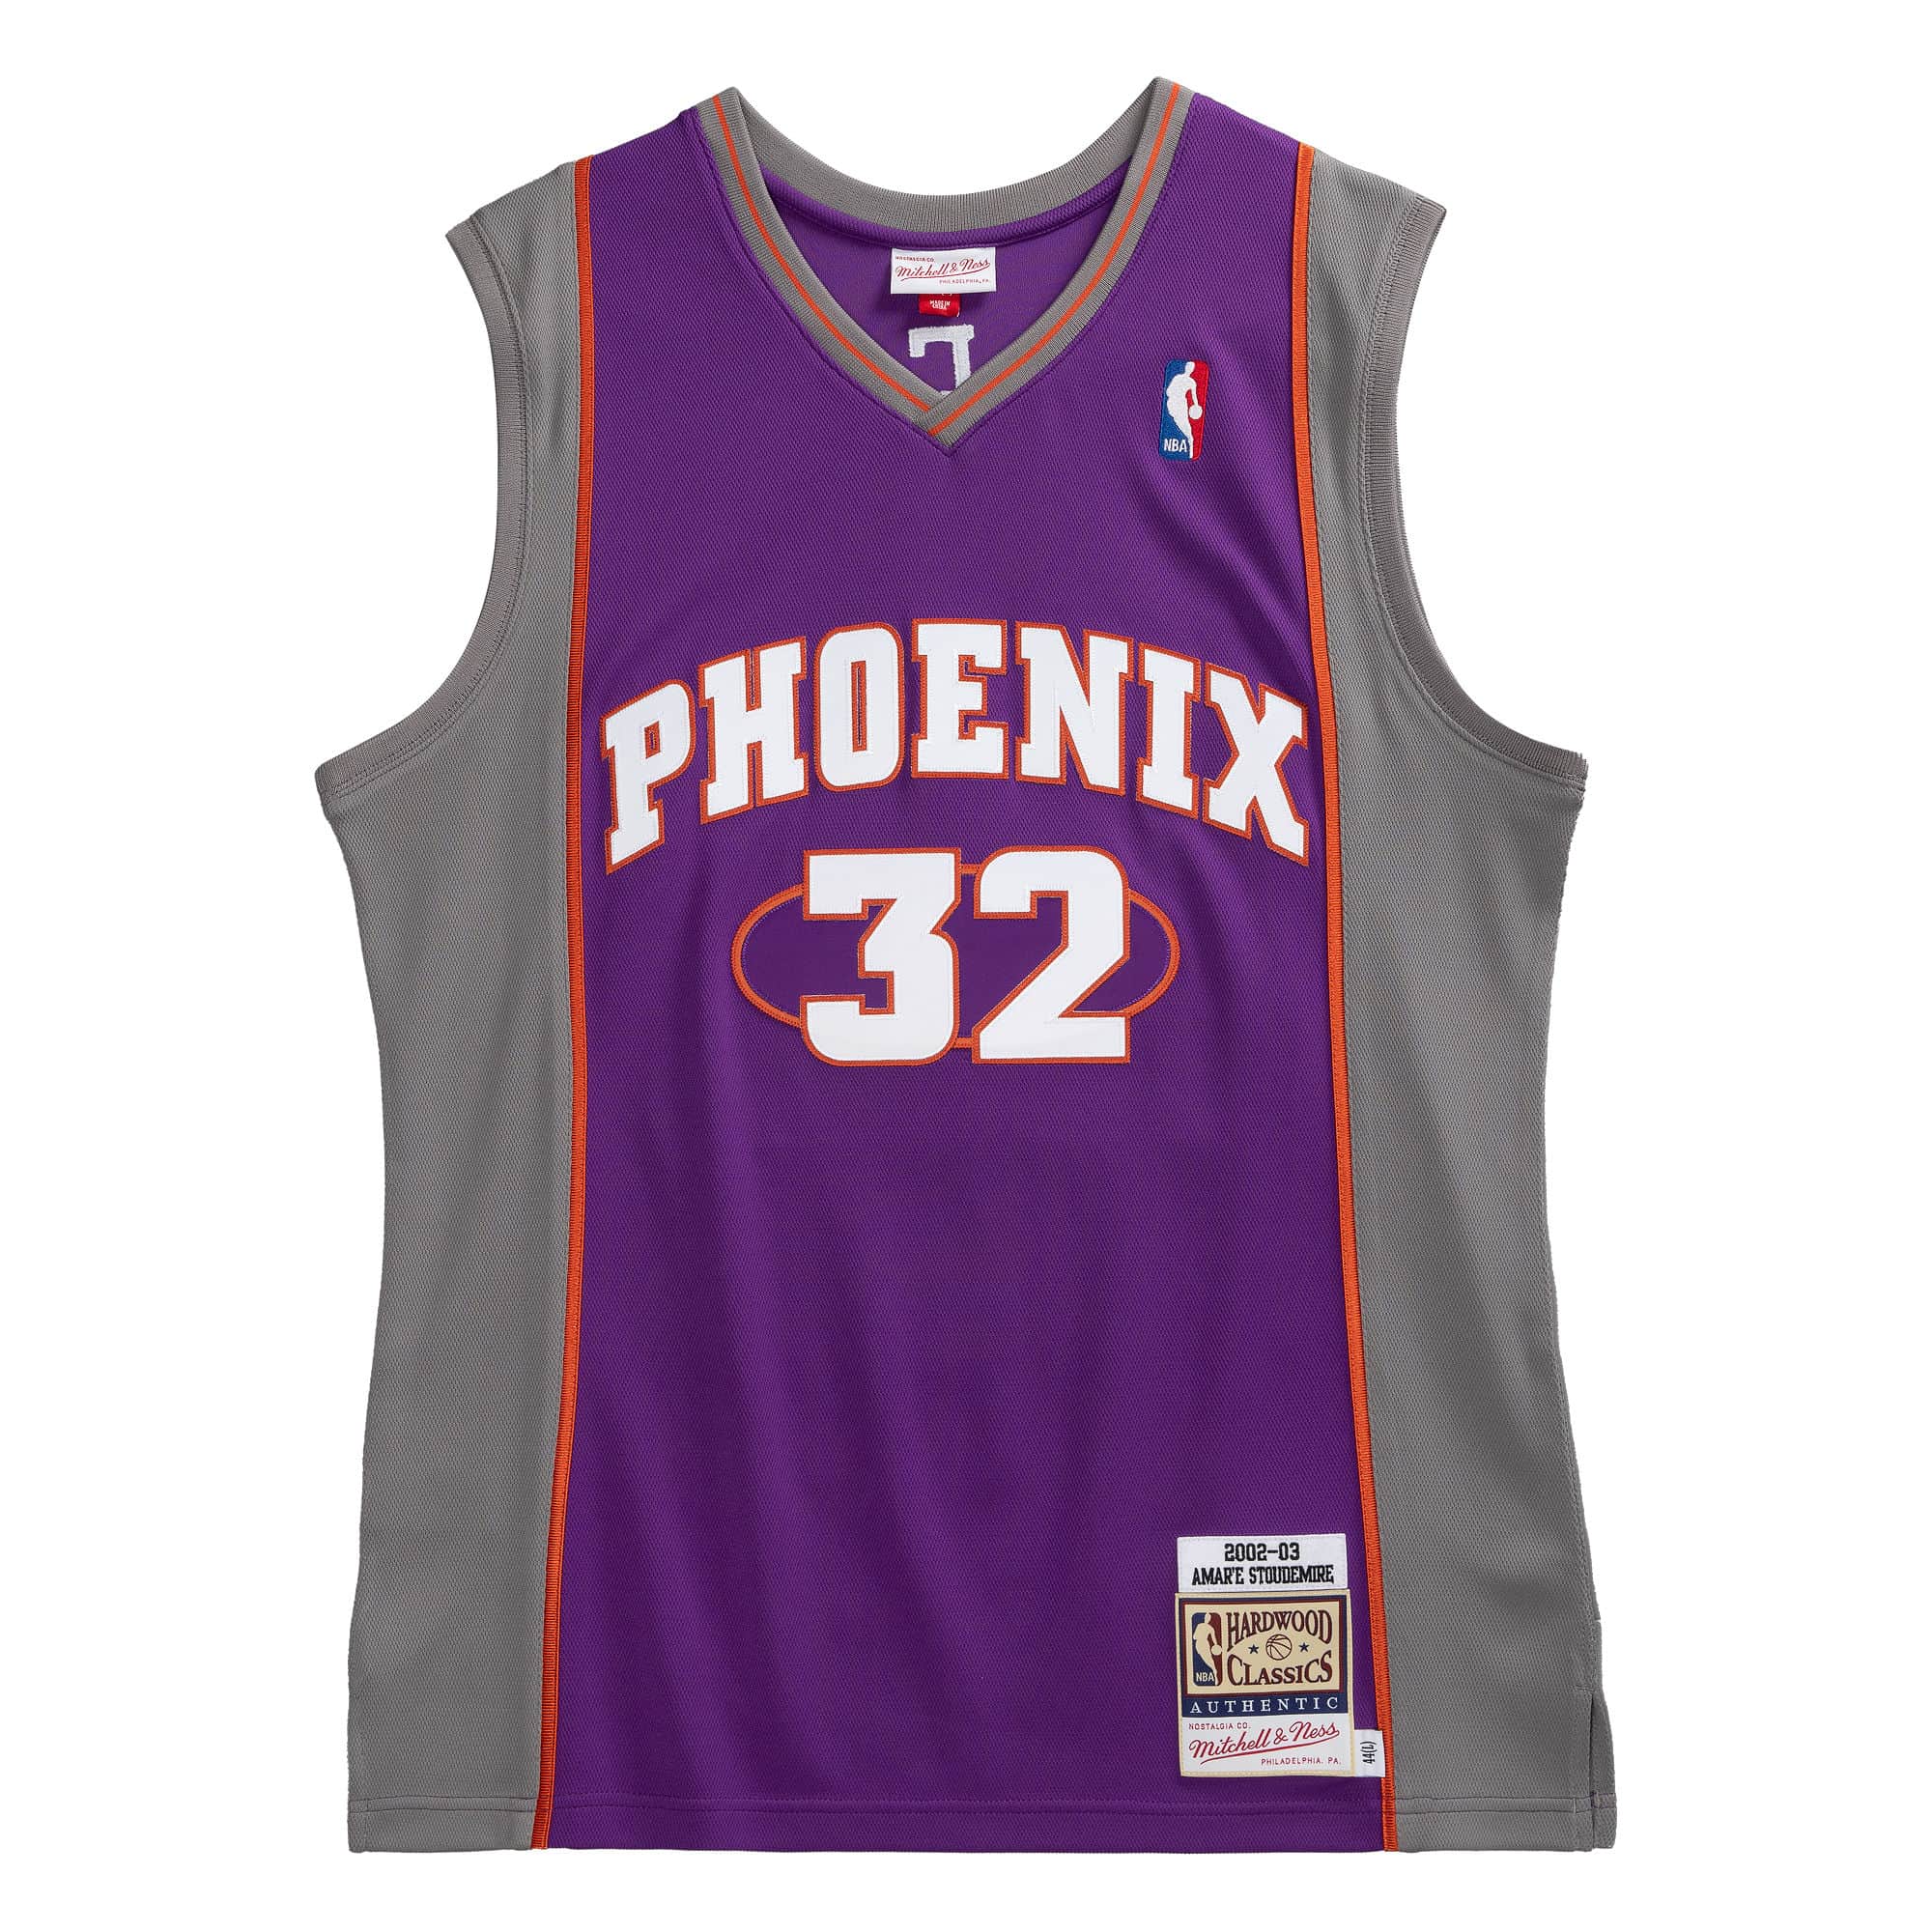 Amar'e Stoudemire Phoenix Suns 2002-03 Jersey